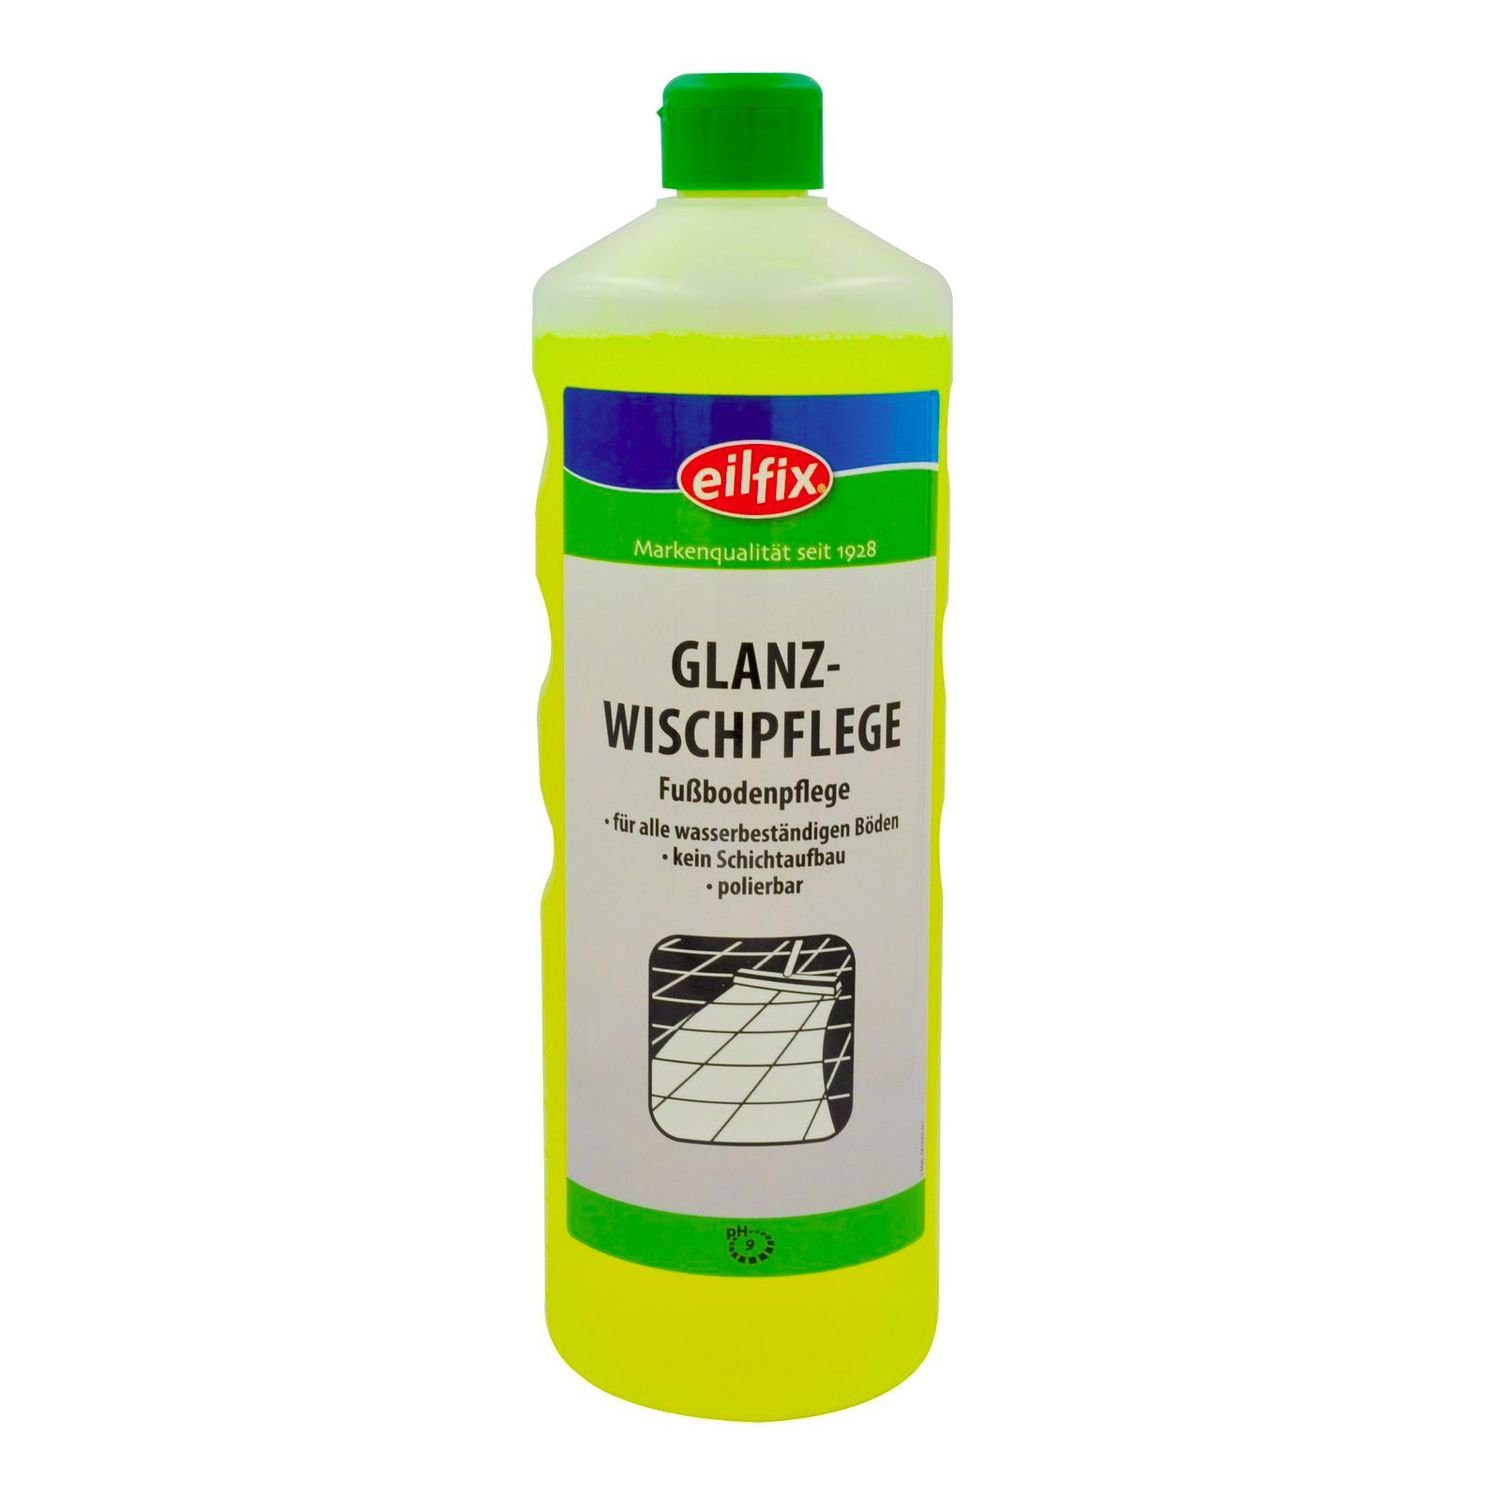 Eilfix Besteckschublade Glanzwischpflege - 1 Liter Flasche